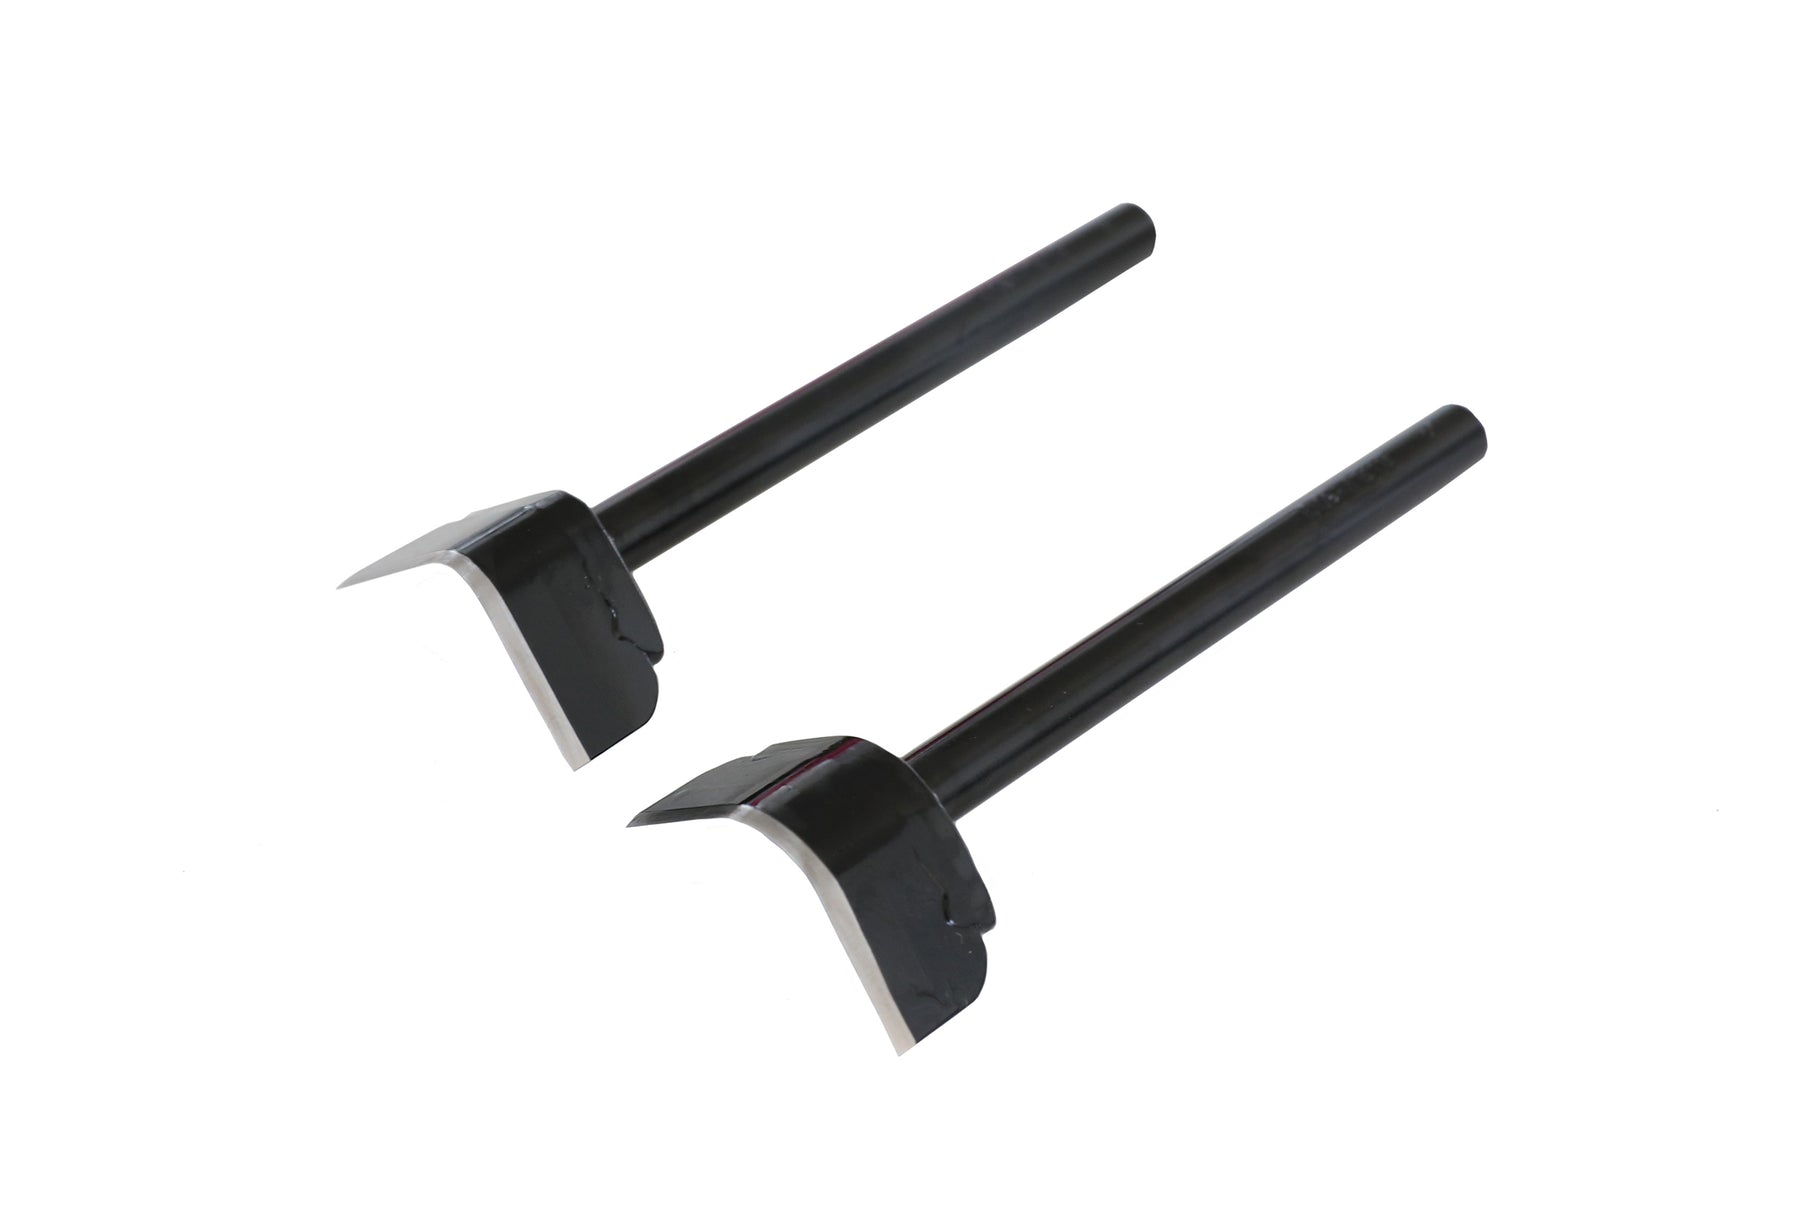 Leather Edge Round Cutter ver.2 durable steel Corner Round Punch Set- –  myleathertool